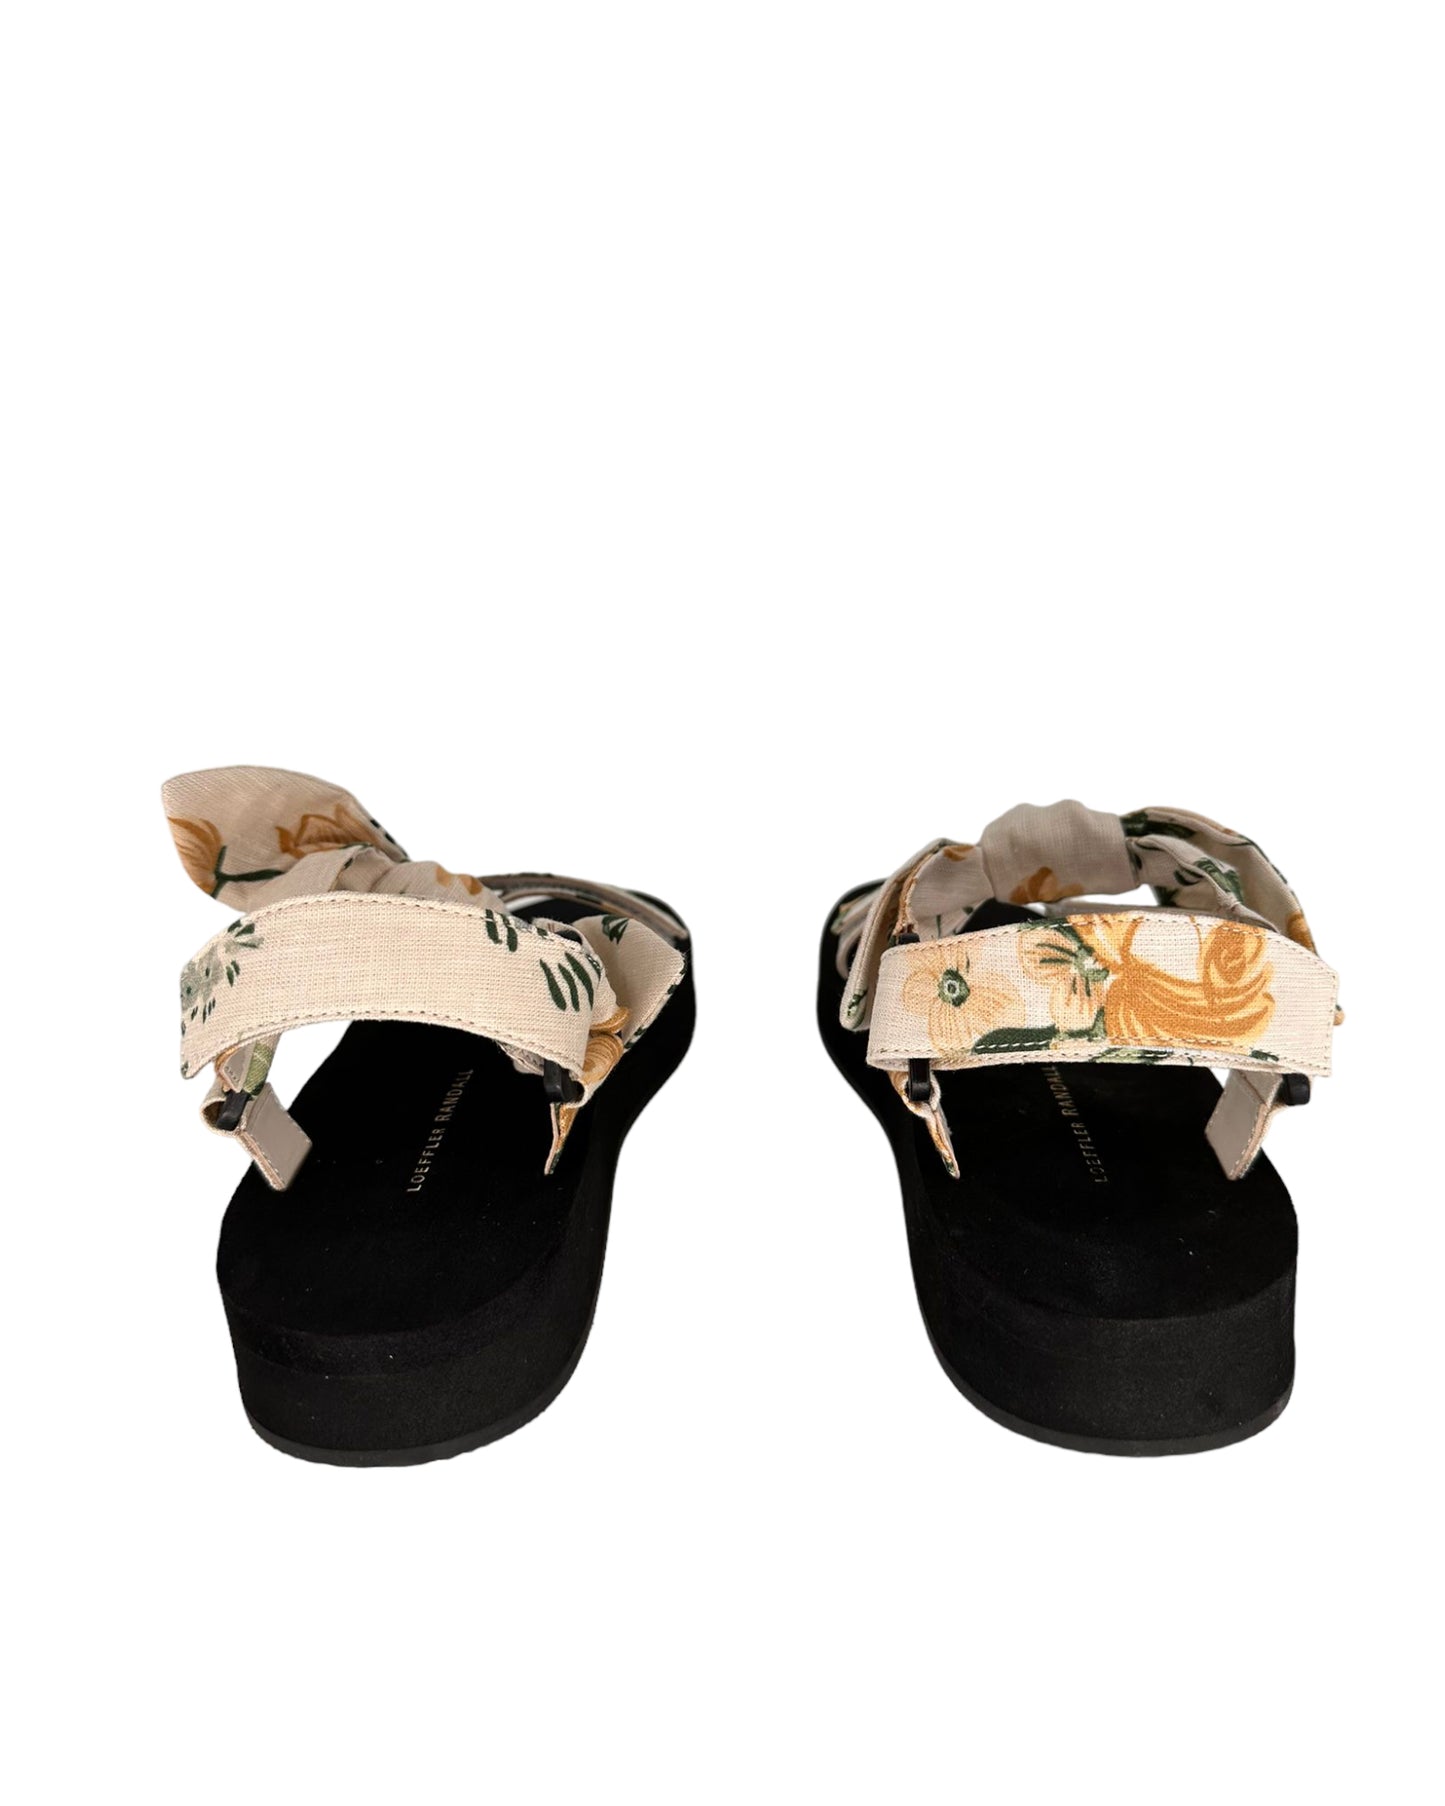 Maisie Nova floral sandals